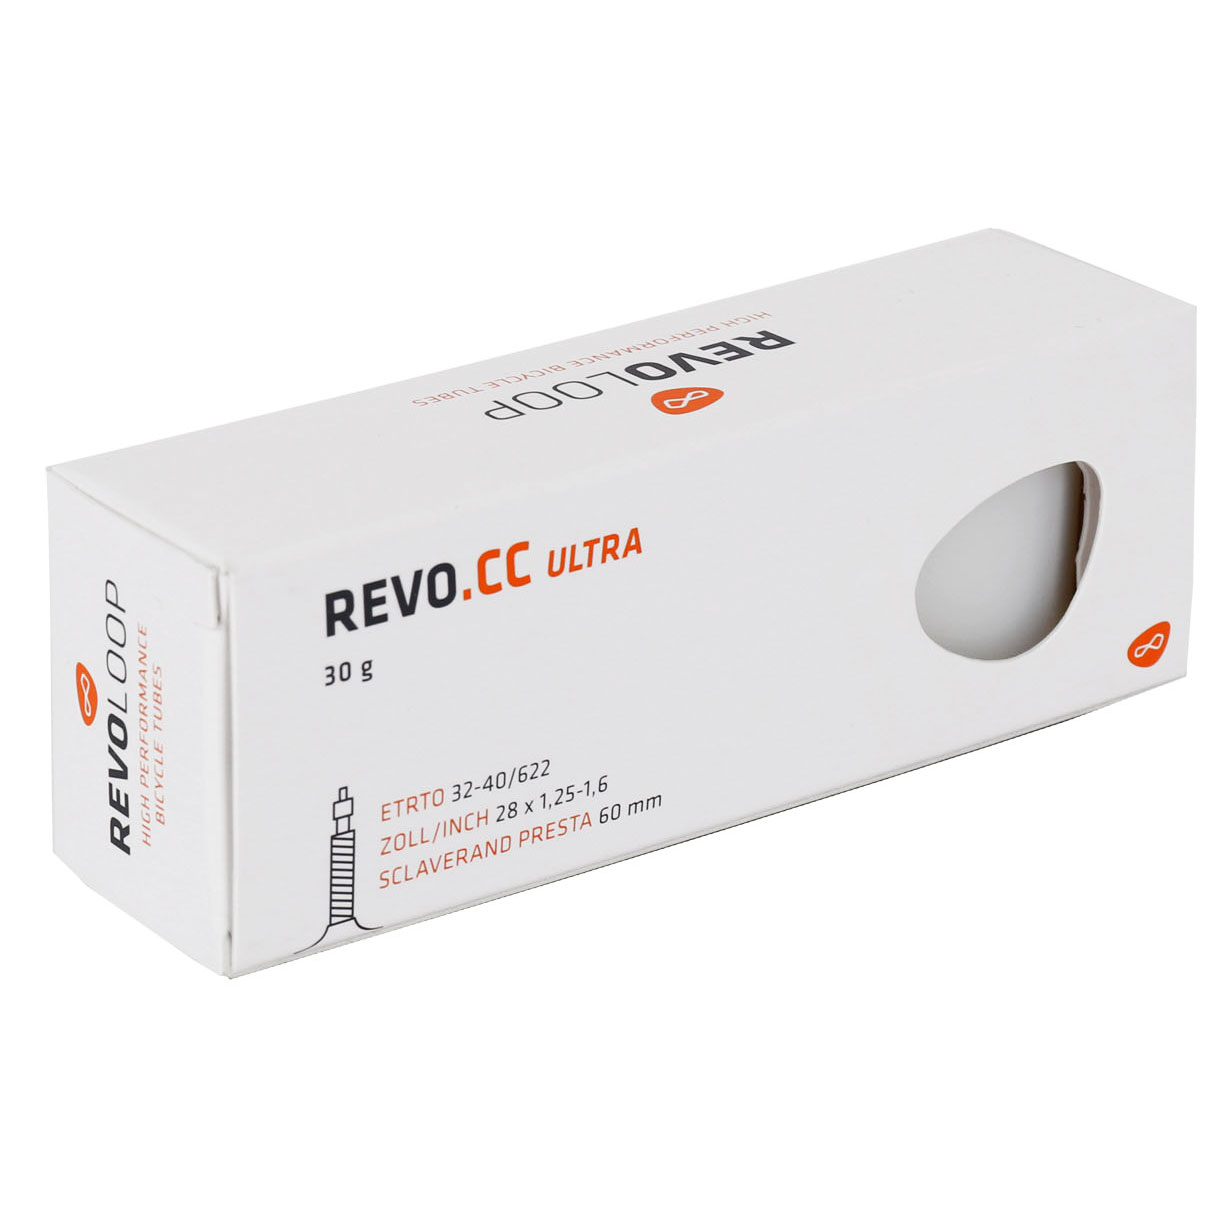 Productfoto van REVOLOOP REVO.CC Ultra Tube - 32-40/622 - Presta 60mm